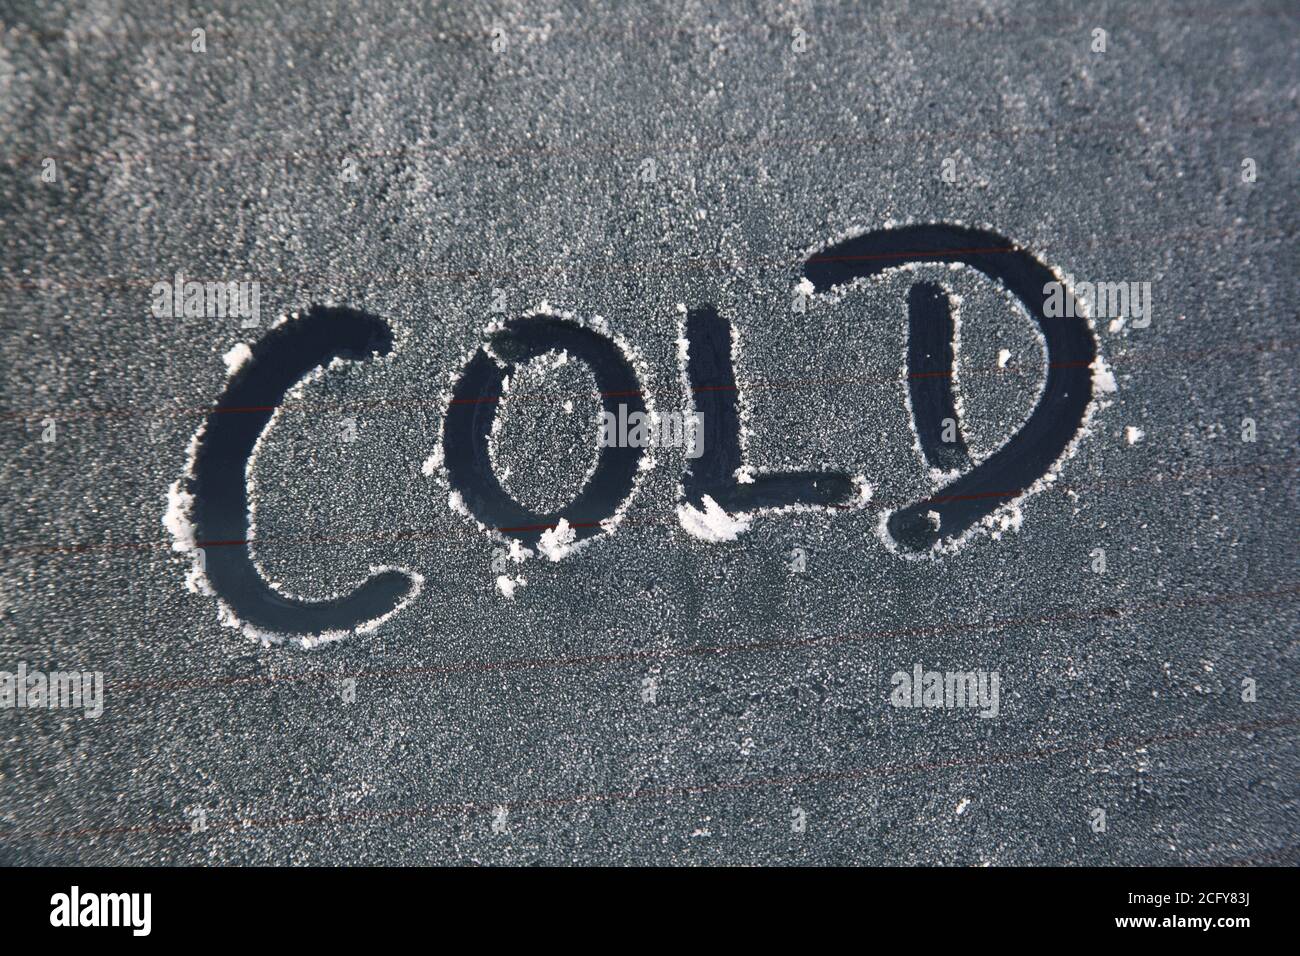 Frost und Schnee auf einem Autoglasfenster mit einem Kalt eiskalt Winter schlechtes Wetter Nachricht Text Zeichen Stock Foto Bild Stockfoto